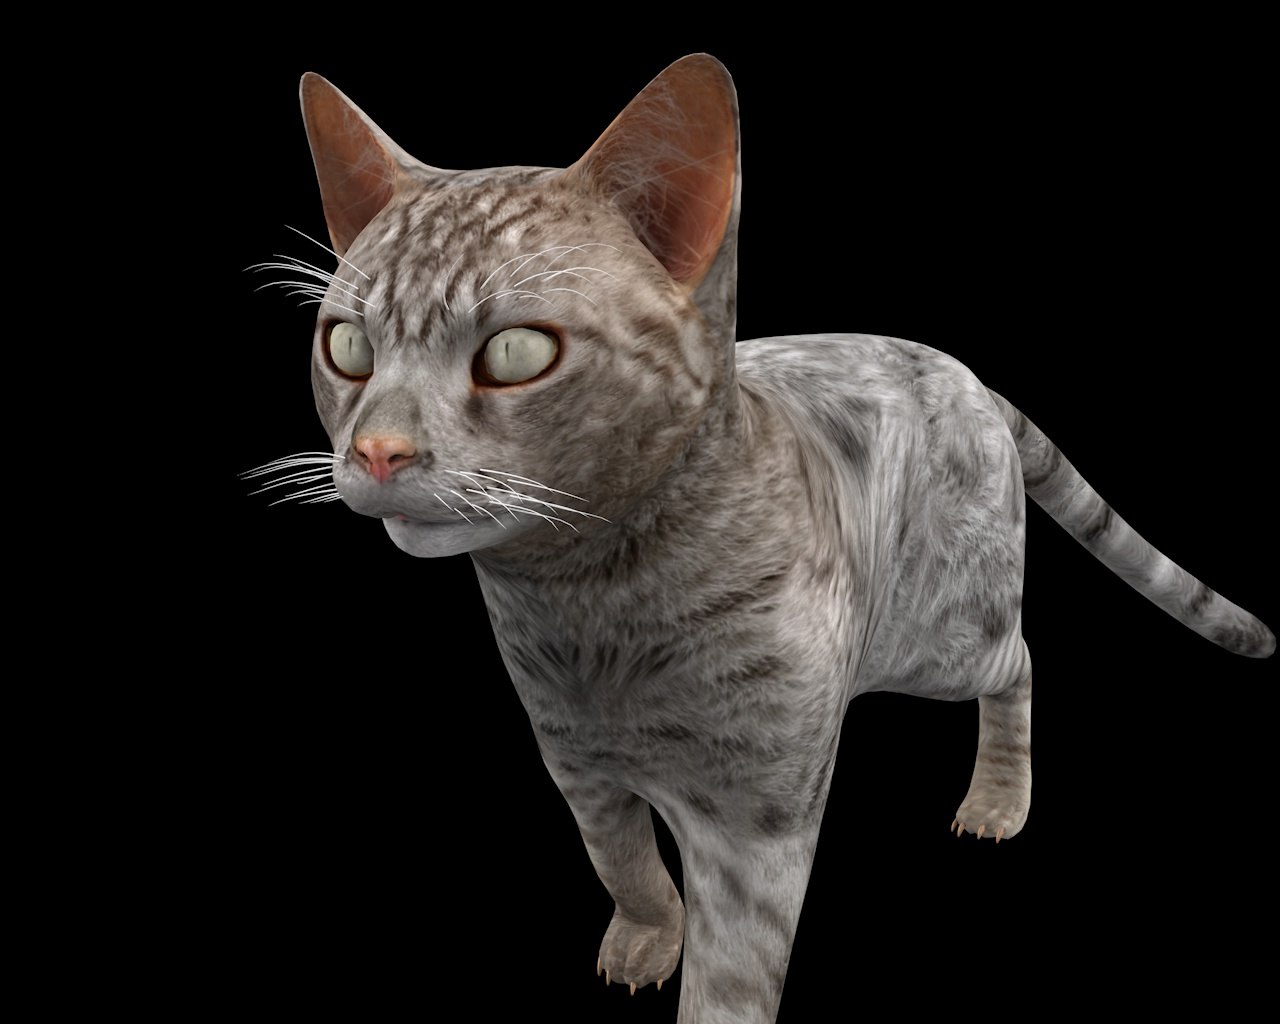 Rigged cat 3D model TurboSquid 1450607